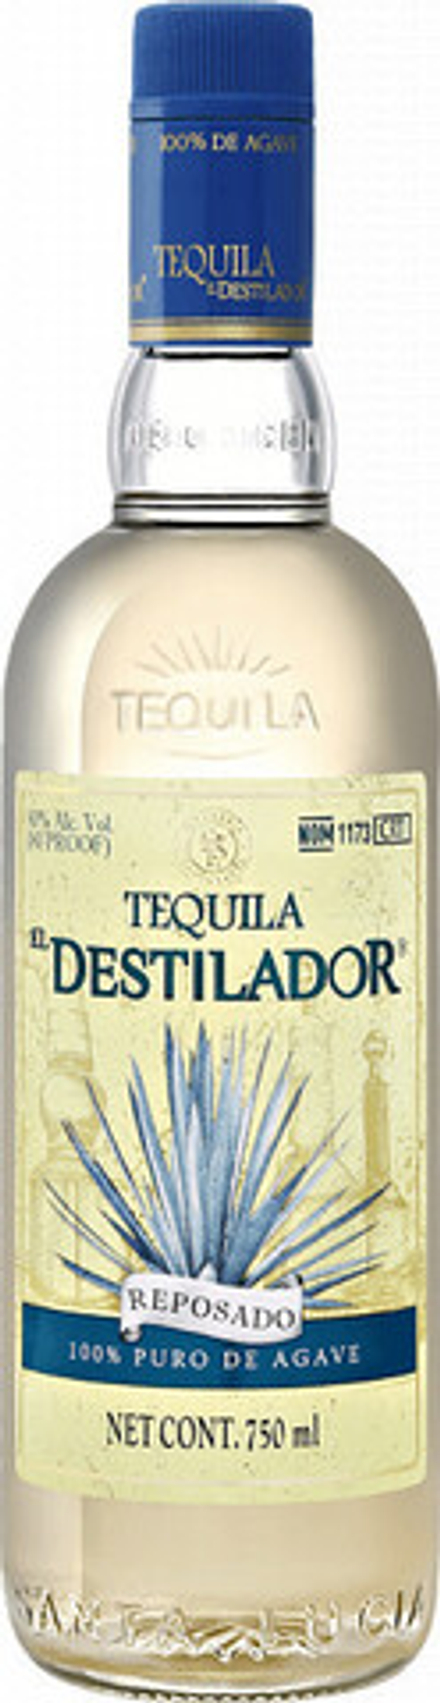 Текила El Destilador Clasico Reposado, 0.75 л